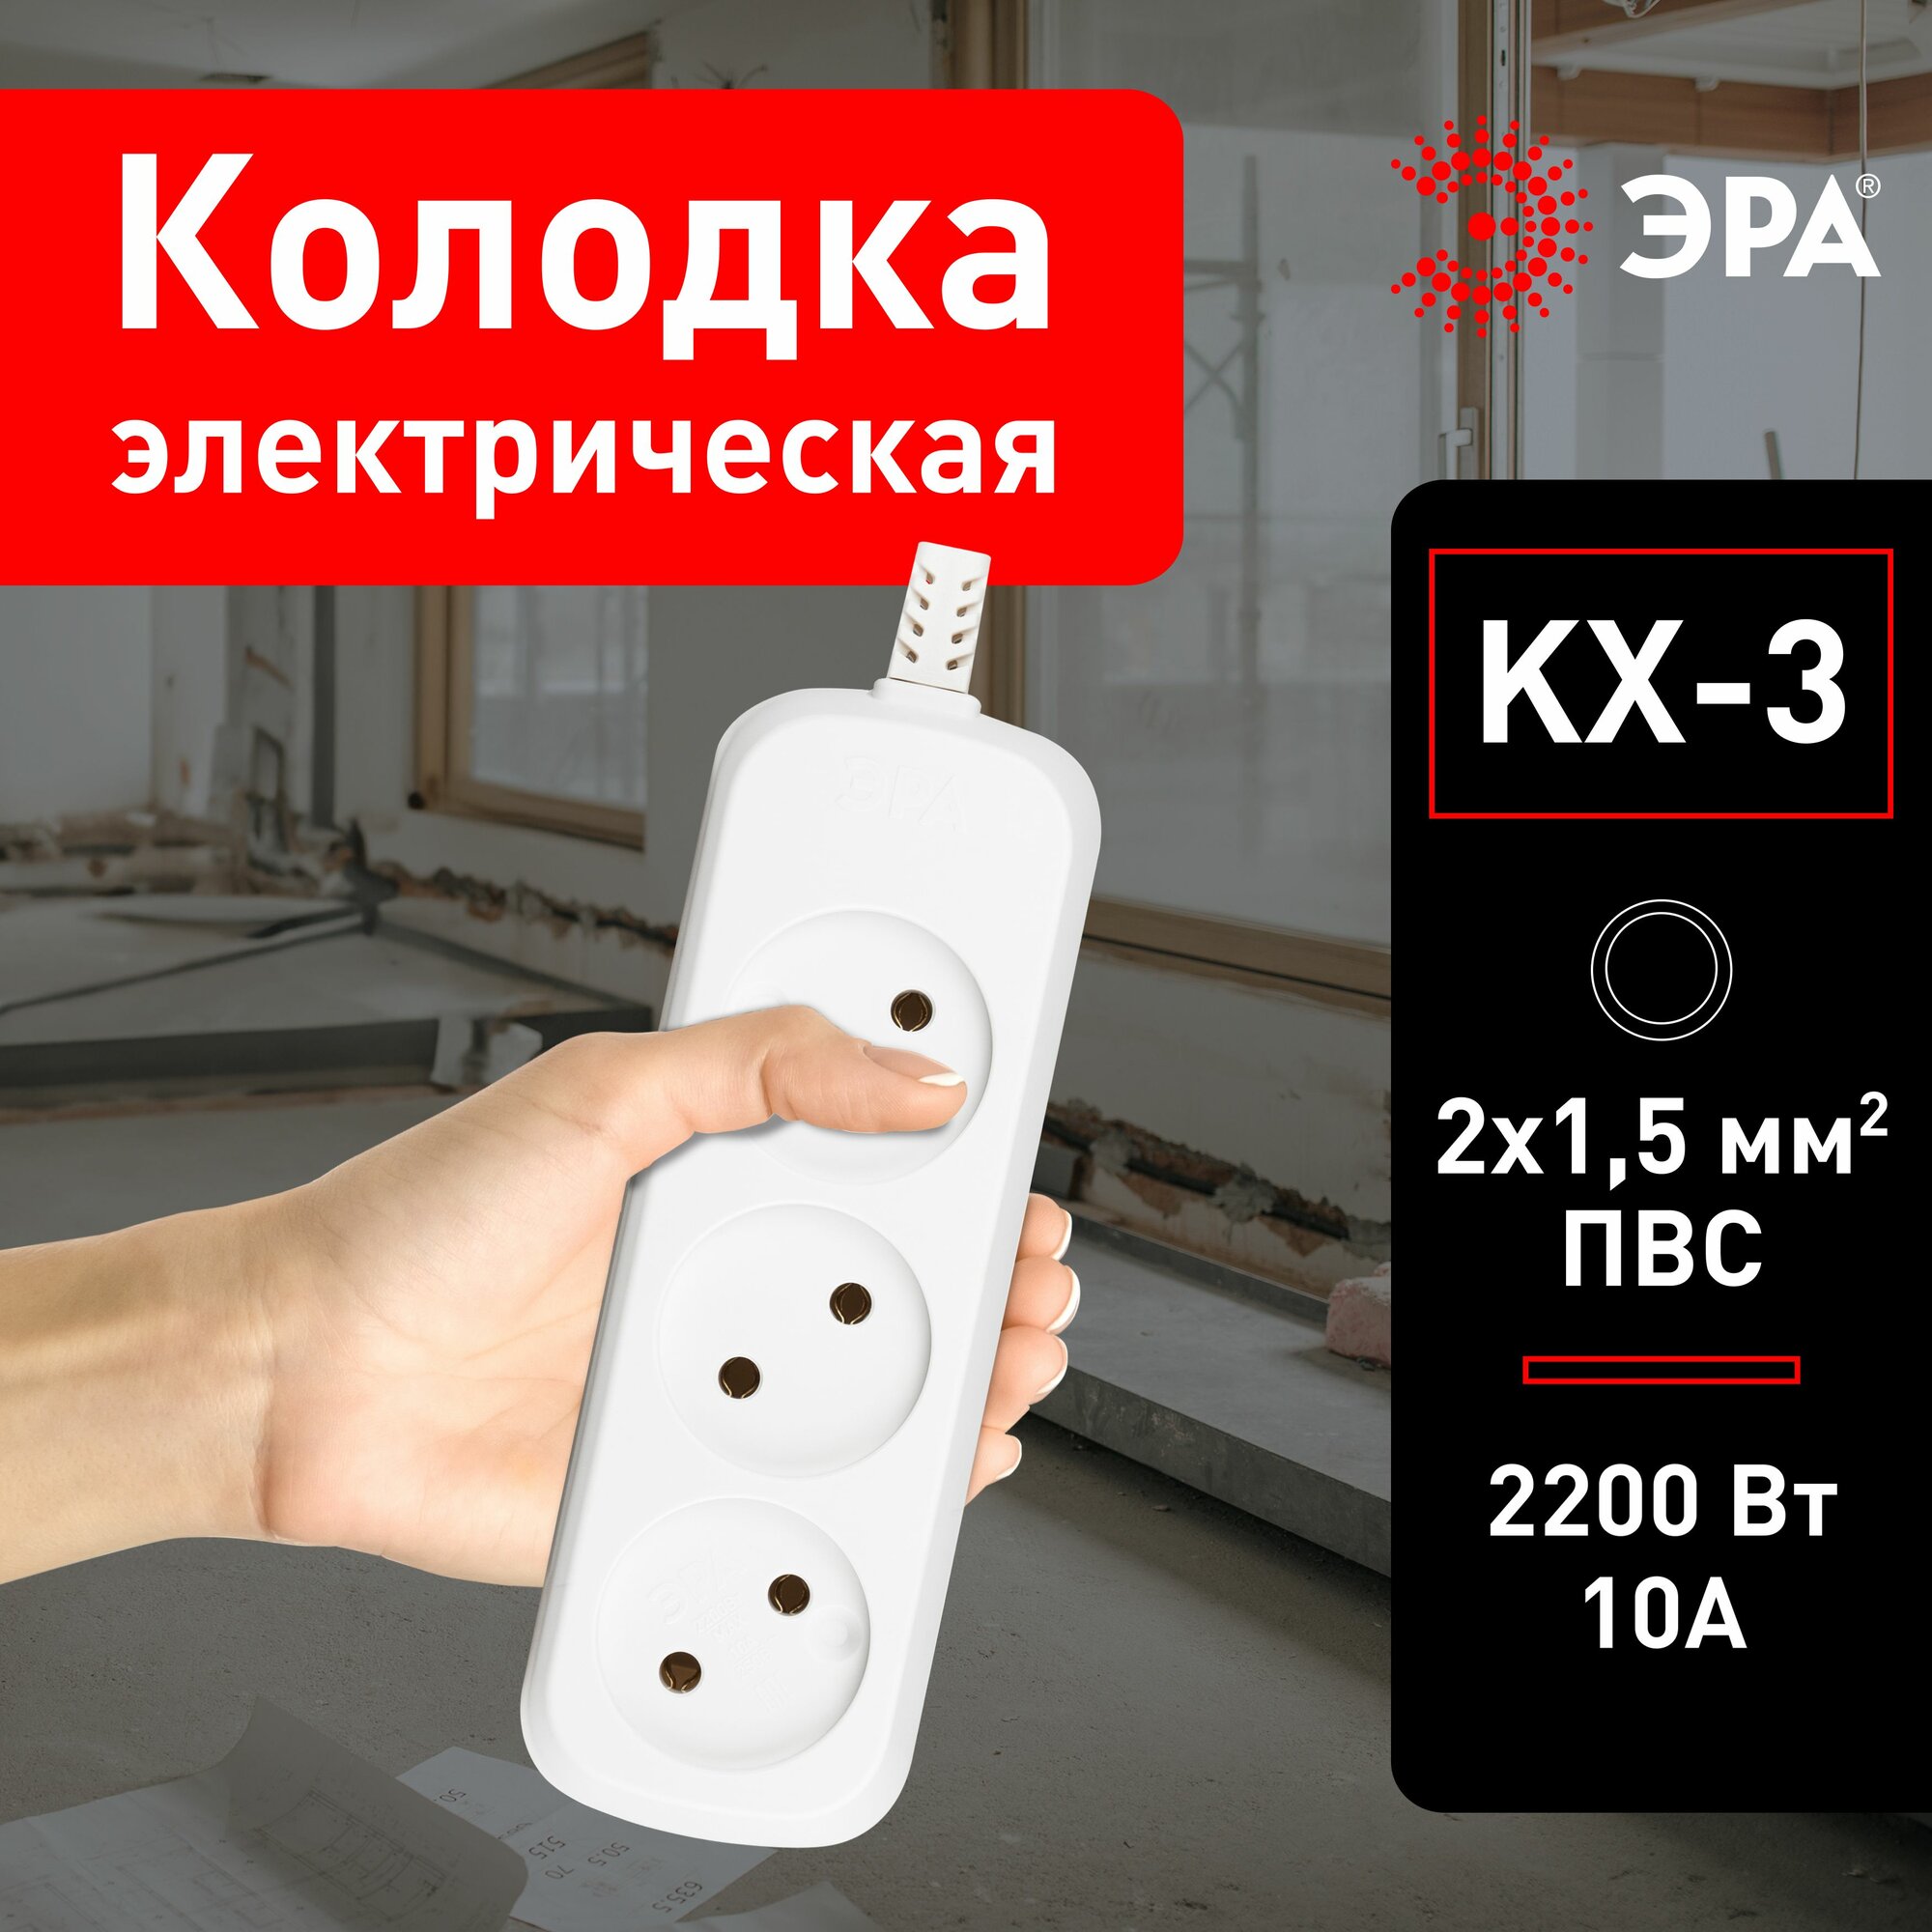 Колодка для удлинителя ЭРА KX-3 электрическая розеточная без зазeмления 3 гнезда, 10 А, 2200 Вт, 2x1мм2